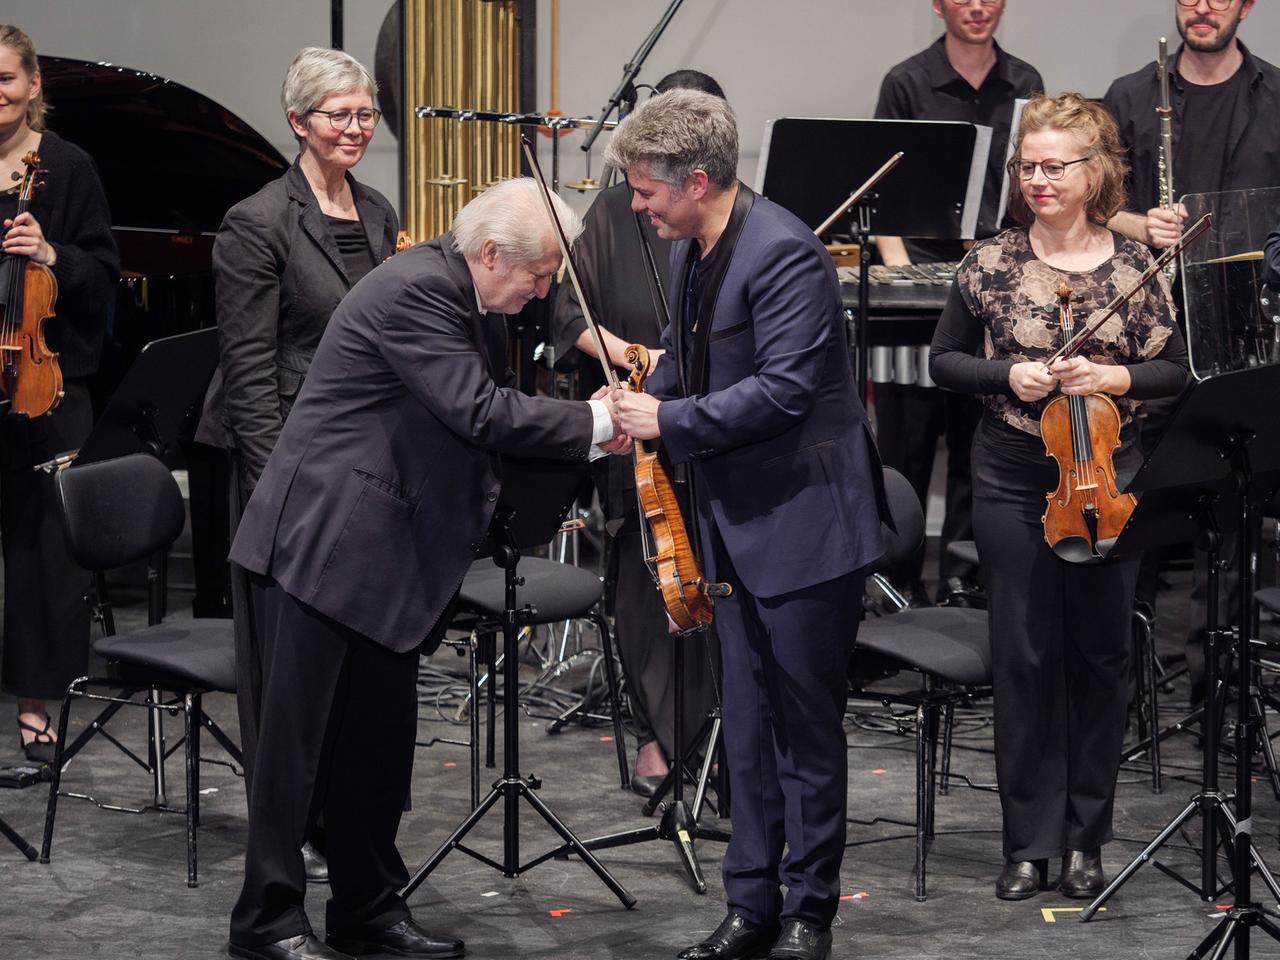 Auf einer Konzertbühne mit einem Ensemble im Hintergrund bedankt sich ein älterer Herr mit einer Verbeugung und Händedruck bei einem Mann mit einer Geige in der Hand. 